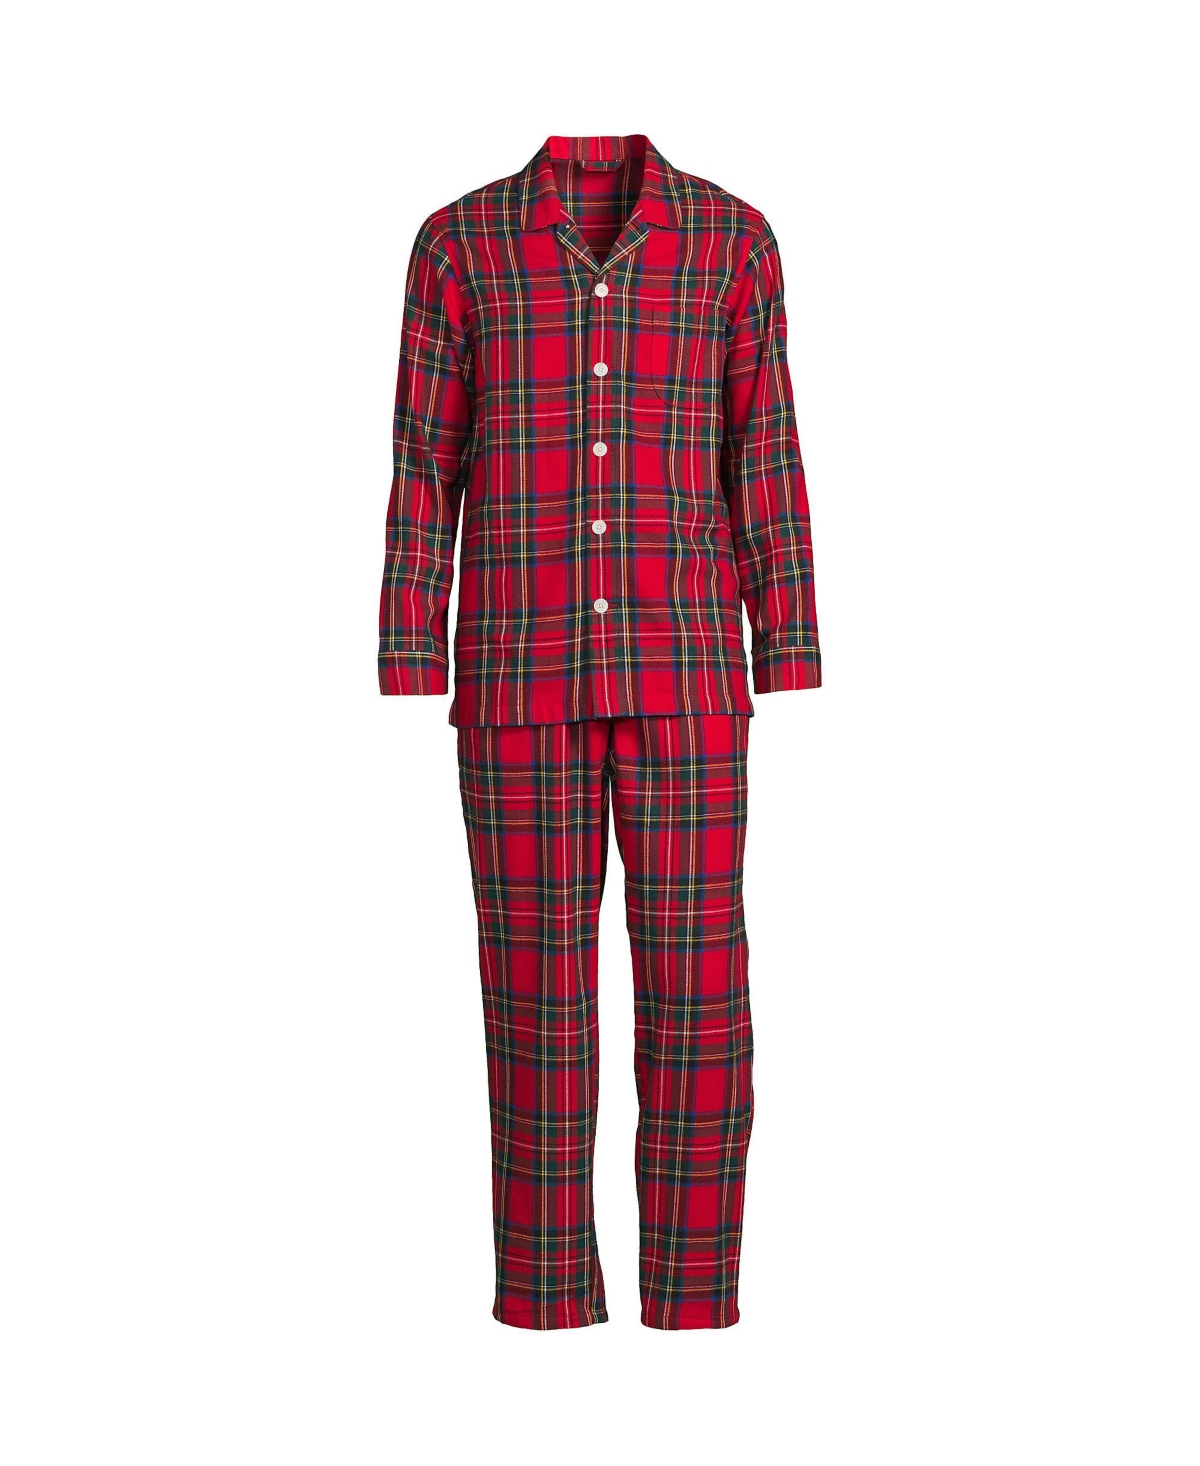 Lands' End Men's Flannel Pajama Set